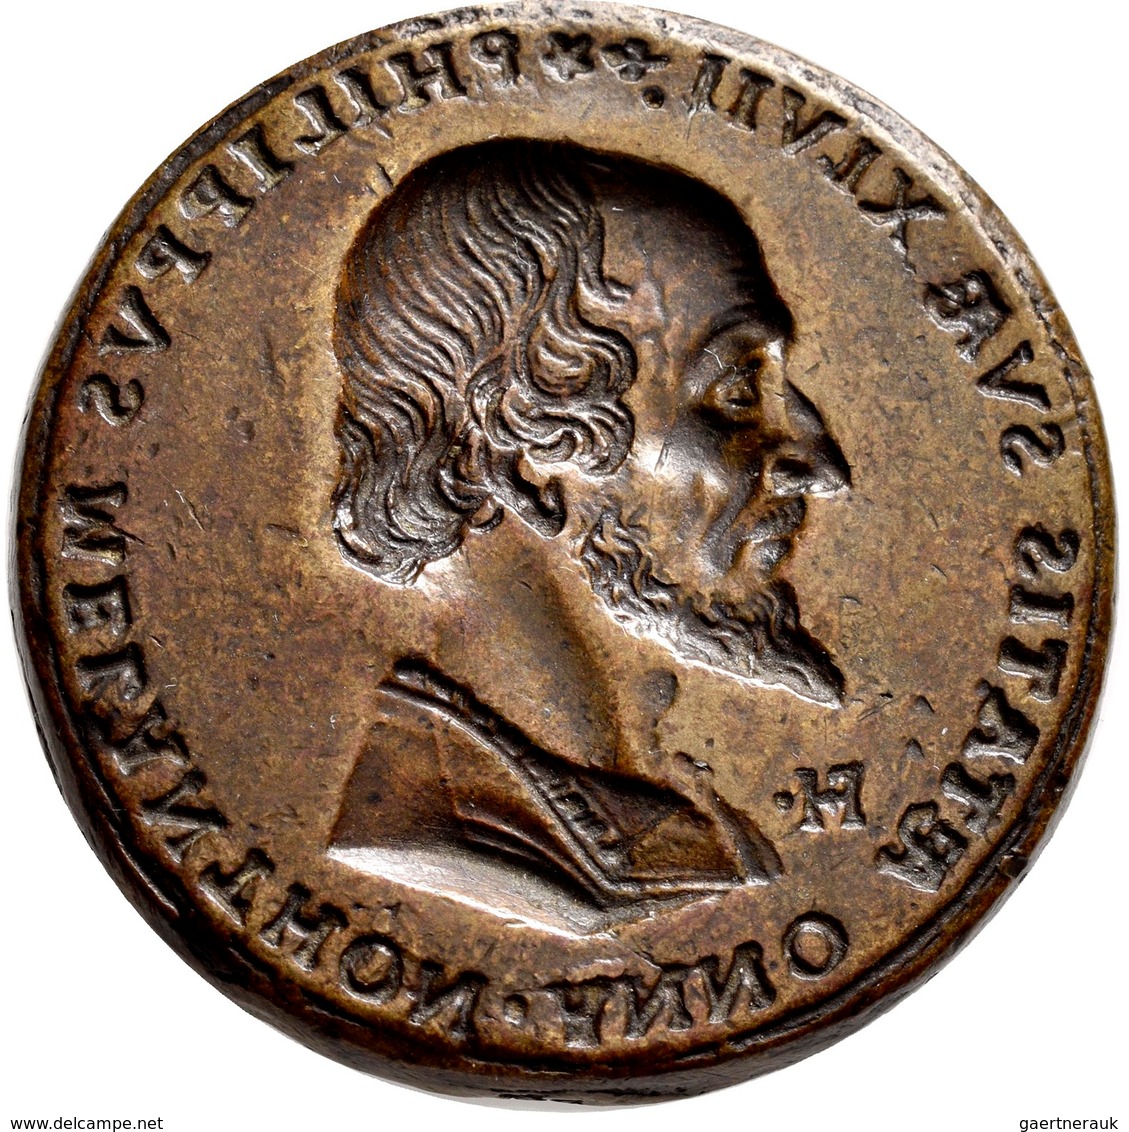 Medaillen - Religion: Philipp Melanchton 1497-1560, Reformator U. Humanist: Bronzene Matrize Vorders - Ohne Zuordnung